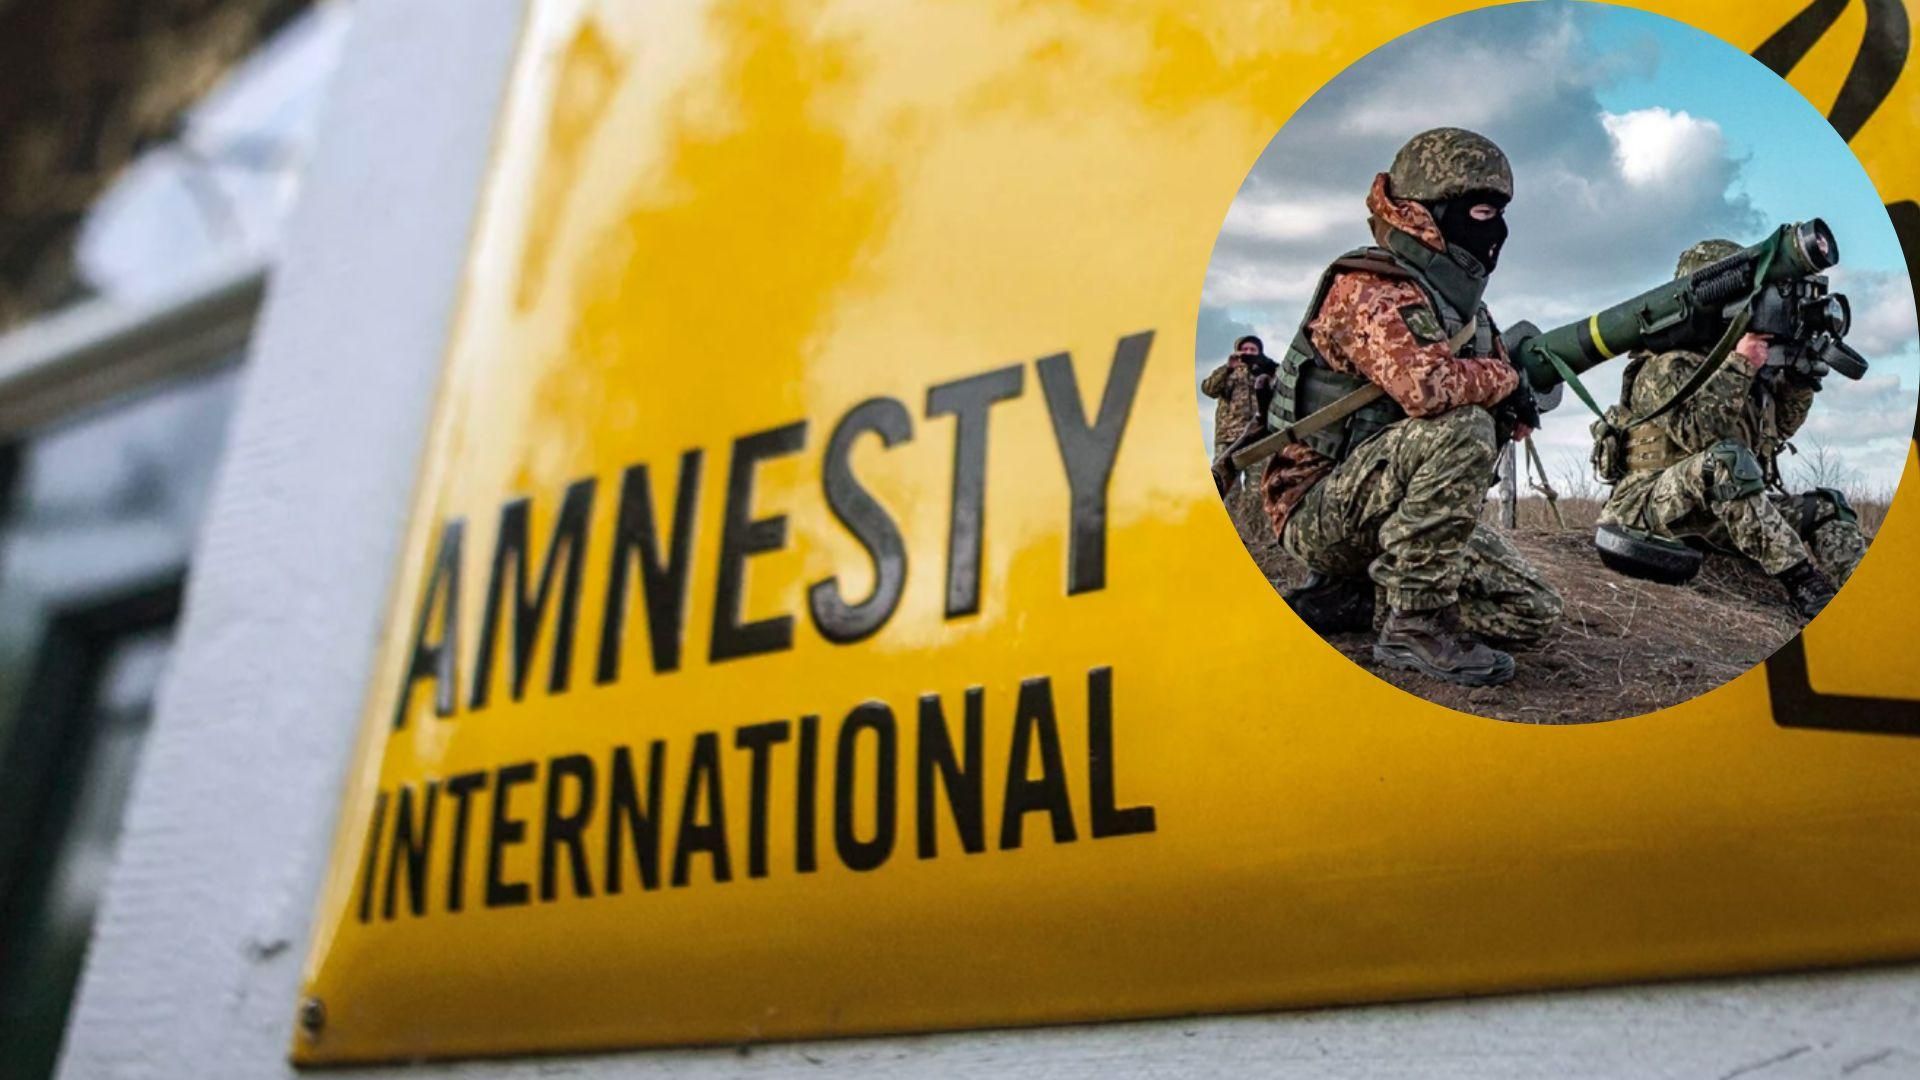 Отчет Amnesty International о ВСУ убил репутацию организации